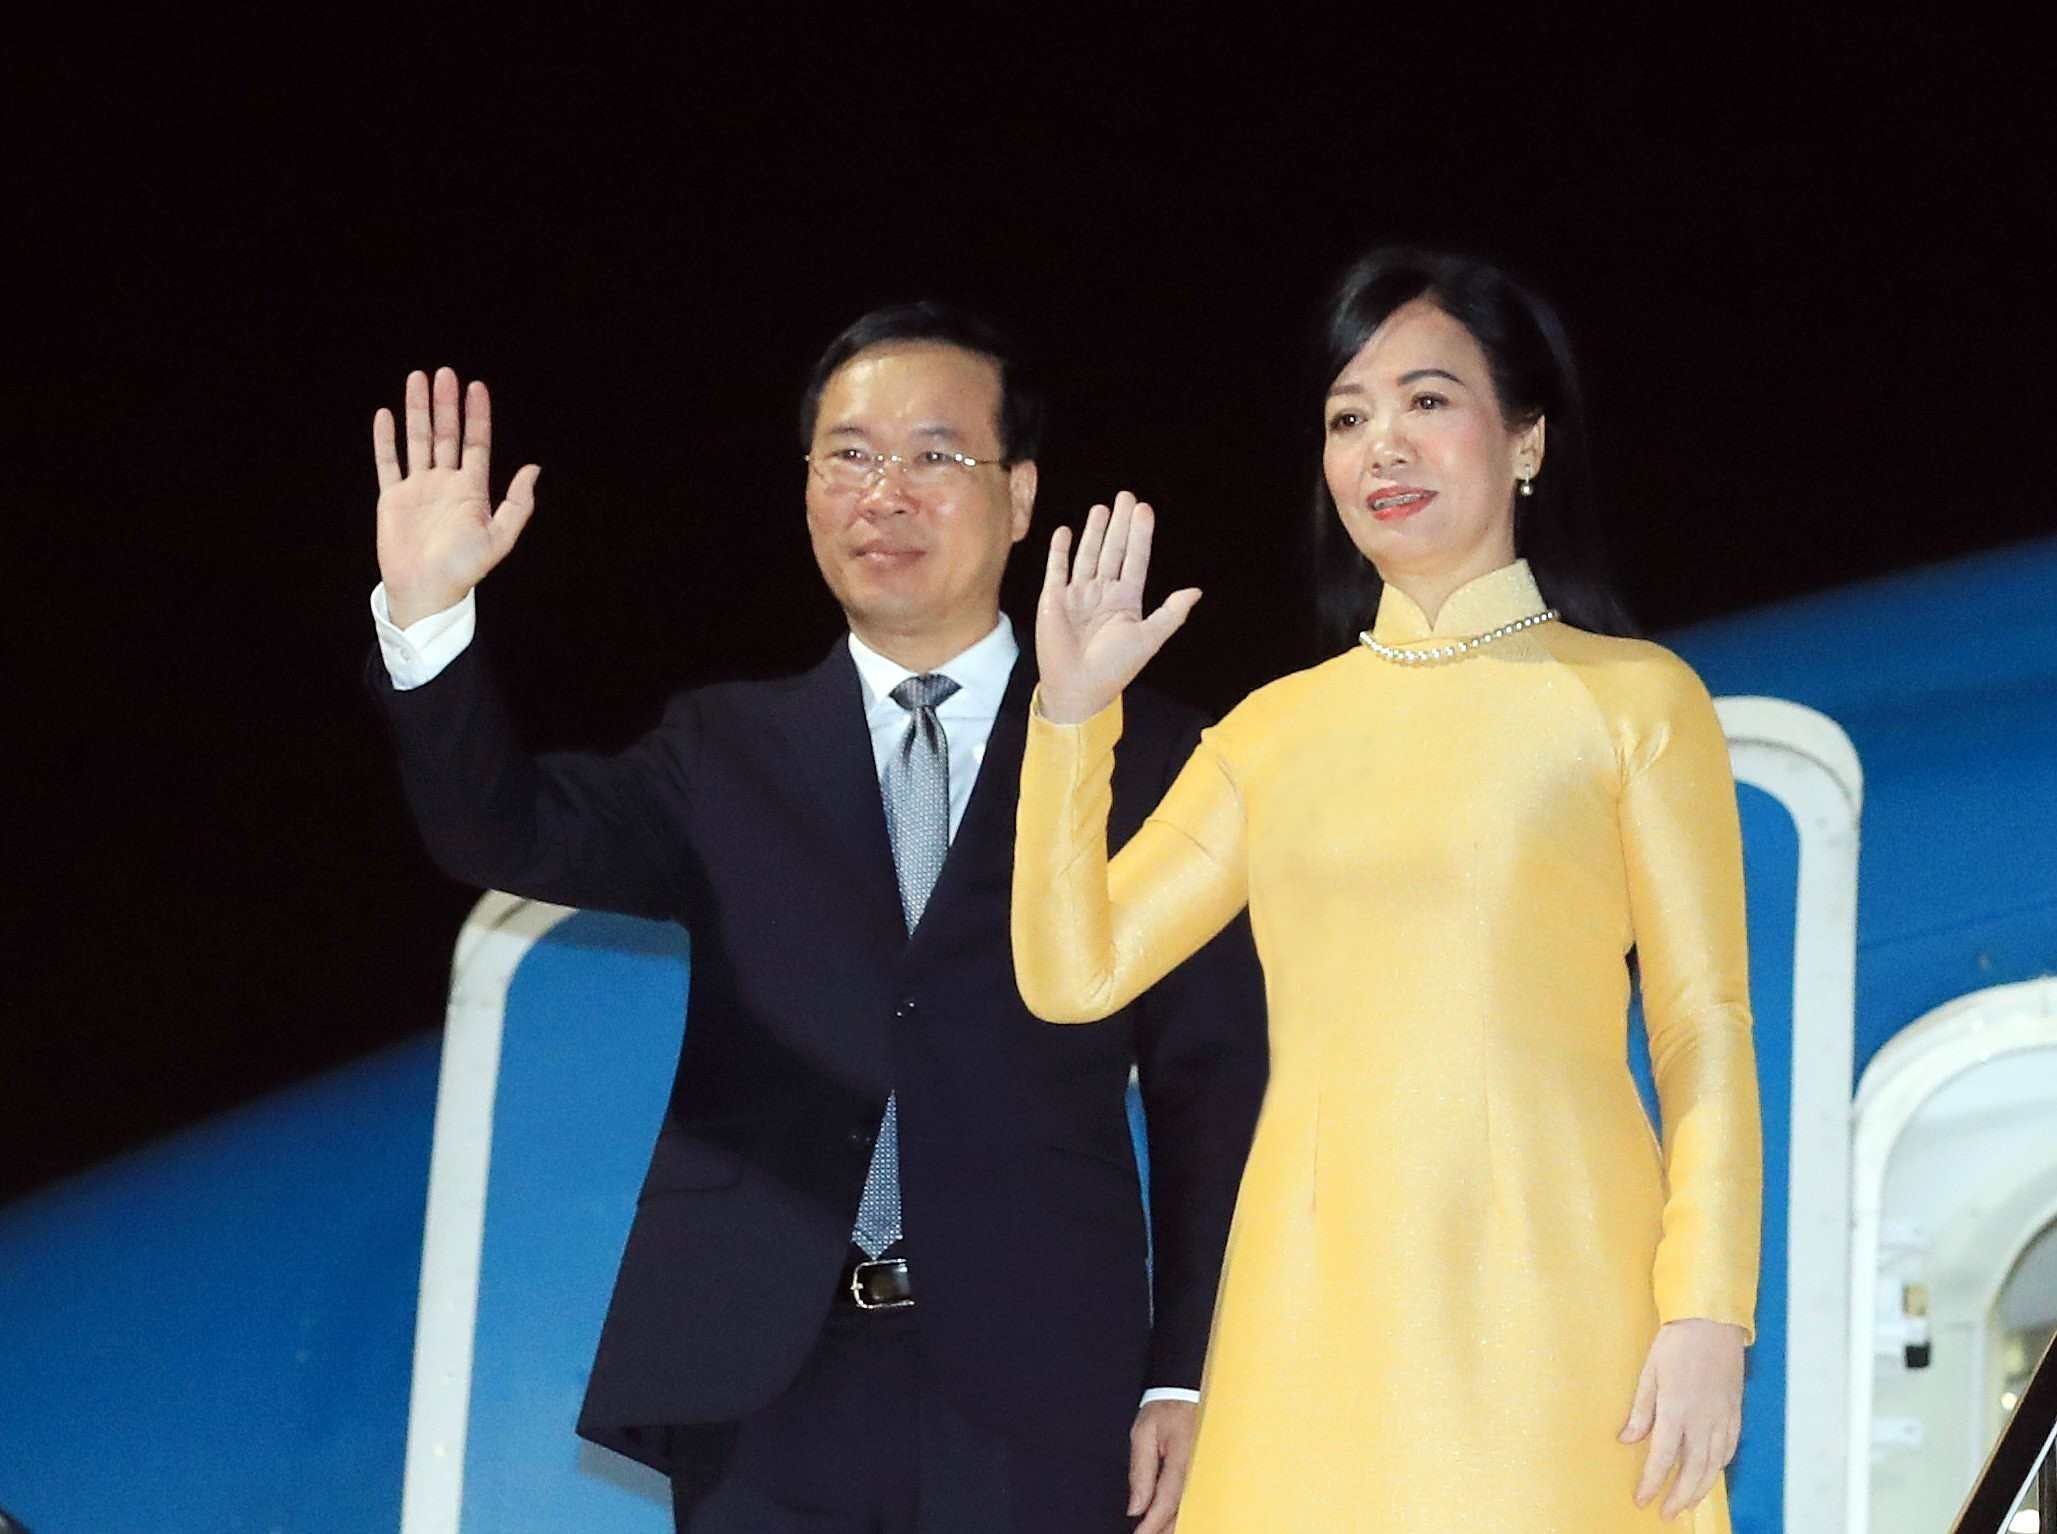 Chuyến thăm của Chủ tịch nước Võ Văn Thưởng và Phu nhân là sự kiện điểm nhấn quan trọng dịp kỷ niệm 50 năm thiết lập quan hệ ngoại giao Việt Nam - Nhật Bản. Ảnh: TTXVN